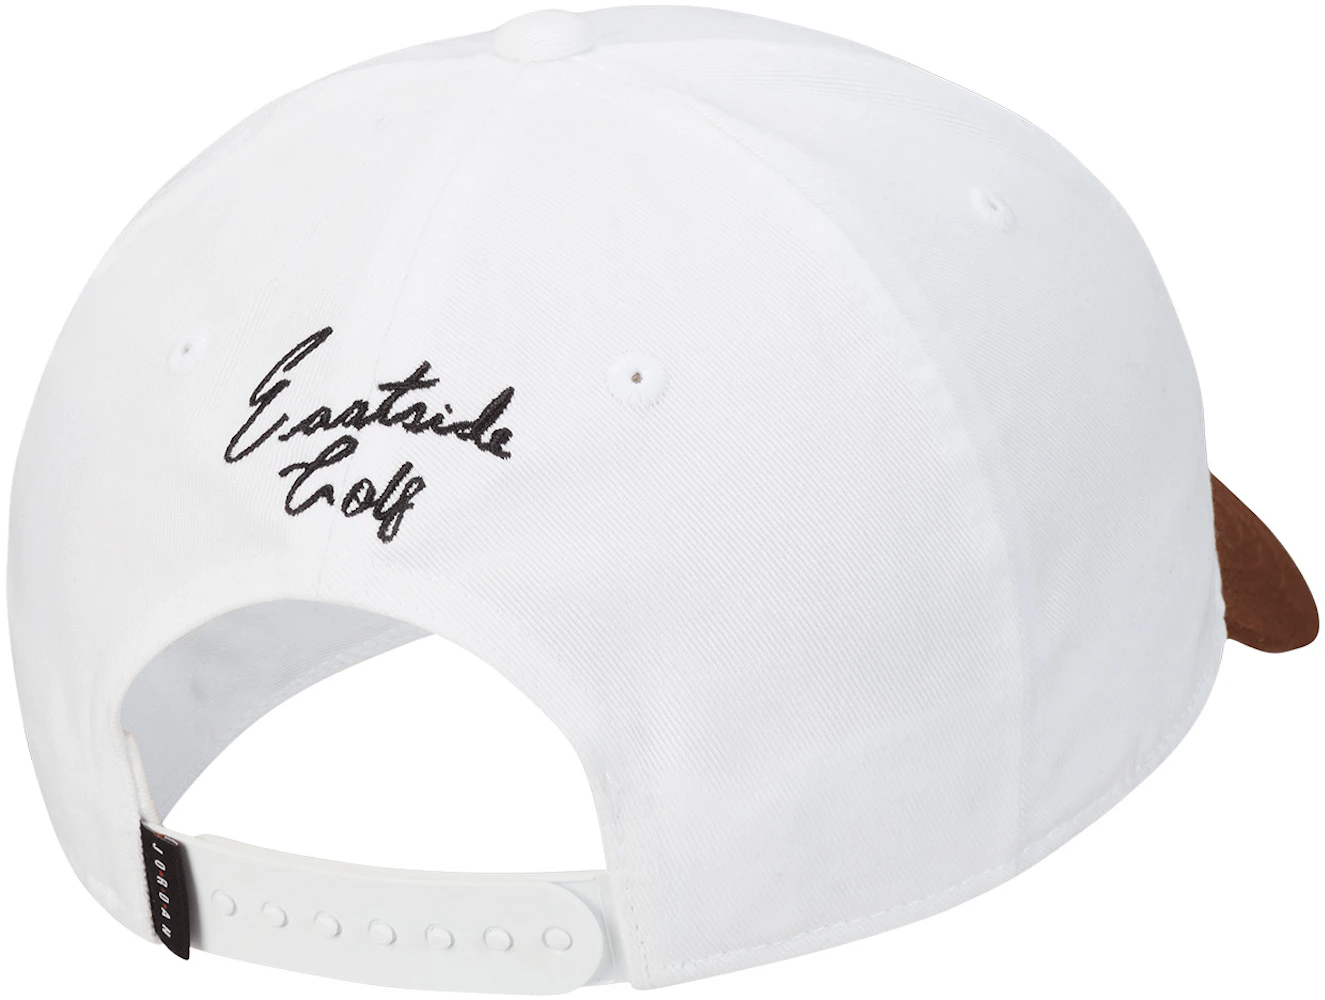 Jordan x Eastside Golf Cap White - FW22 - US